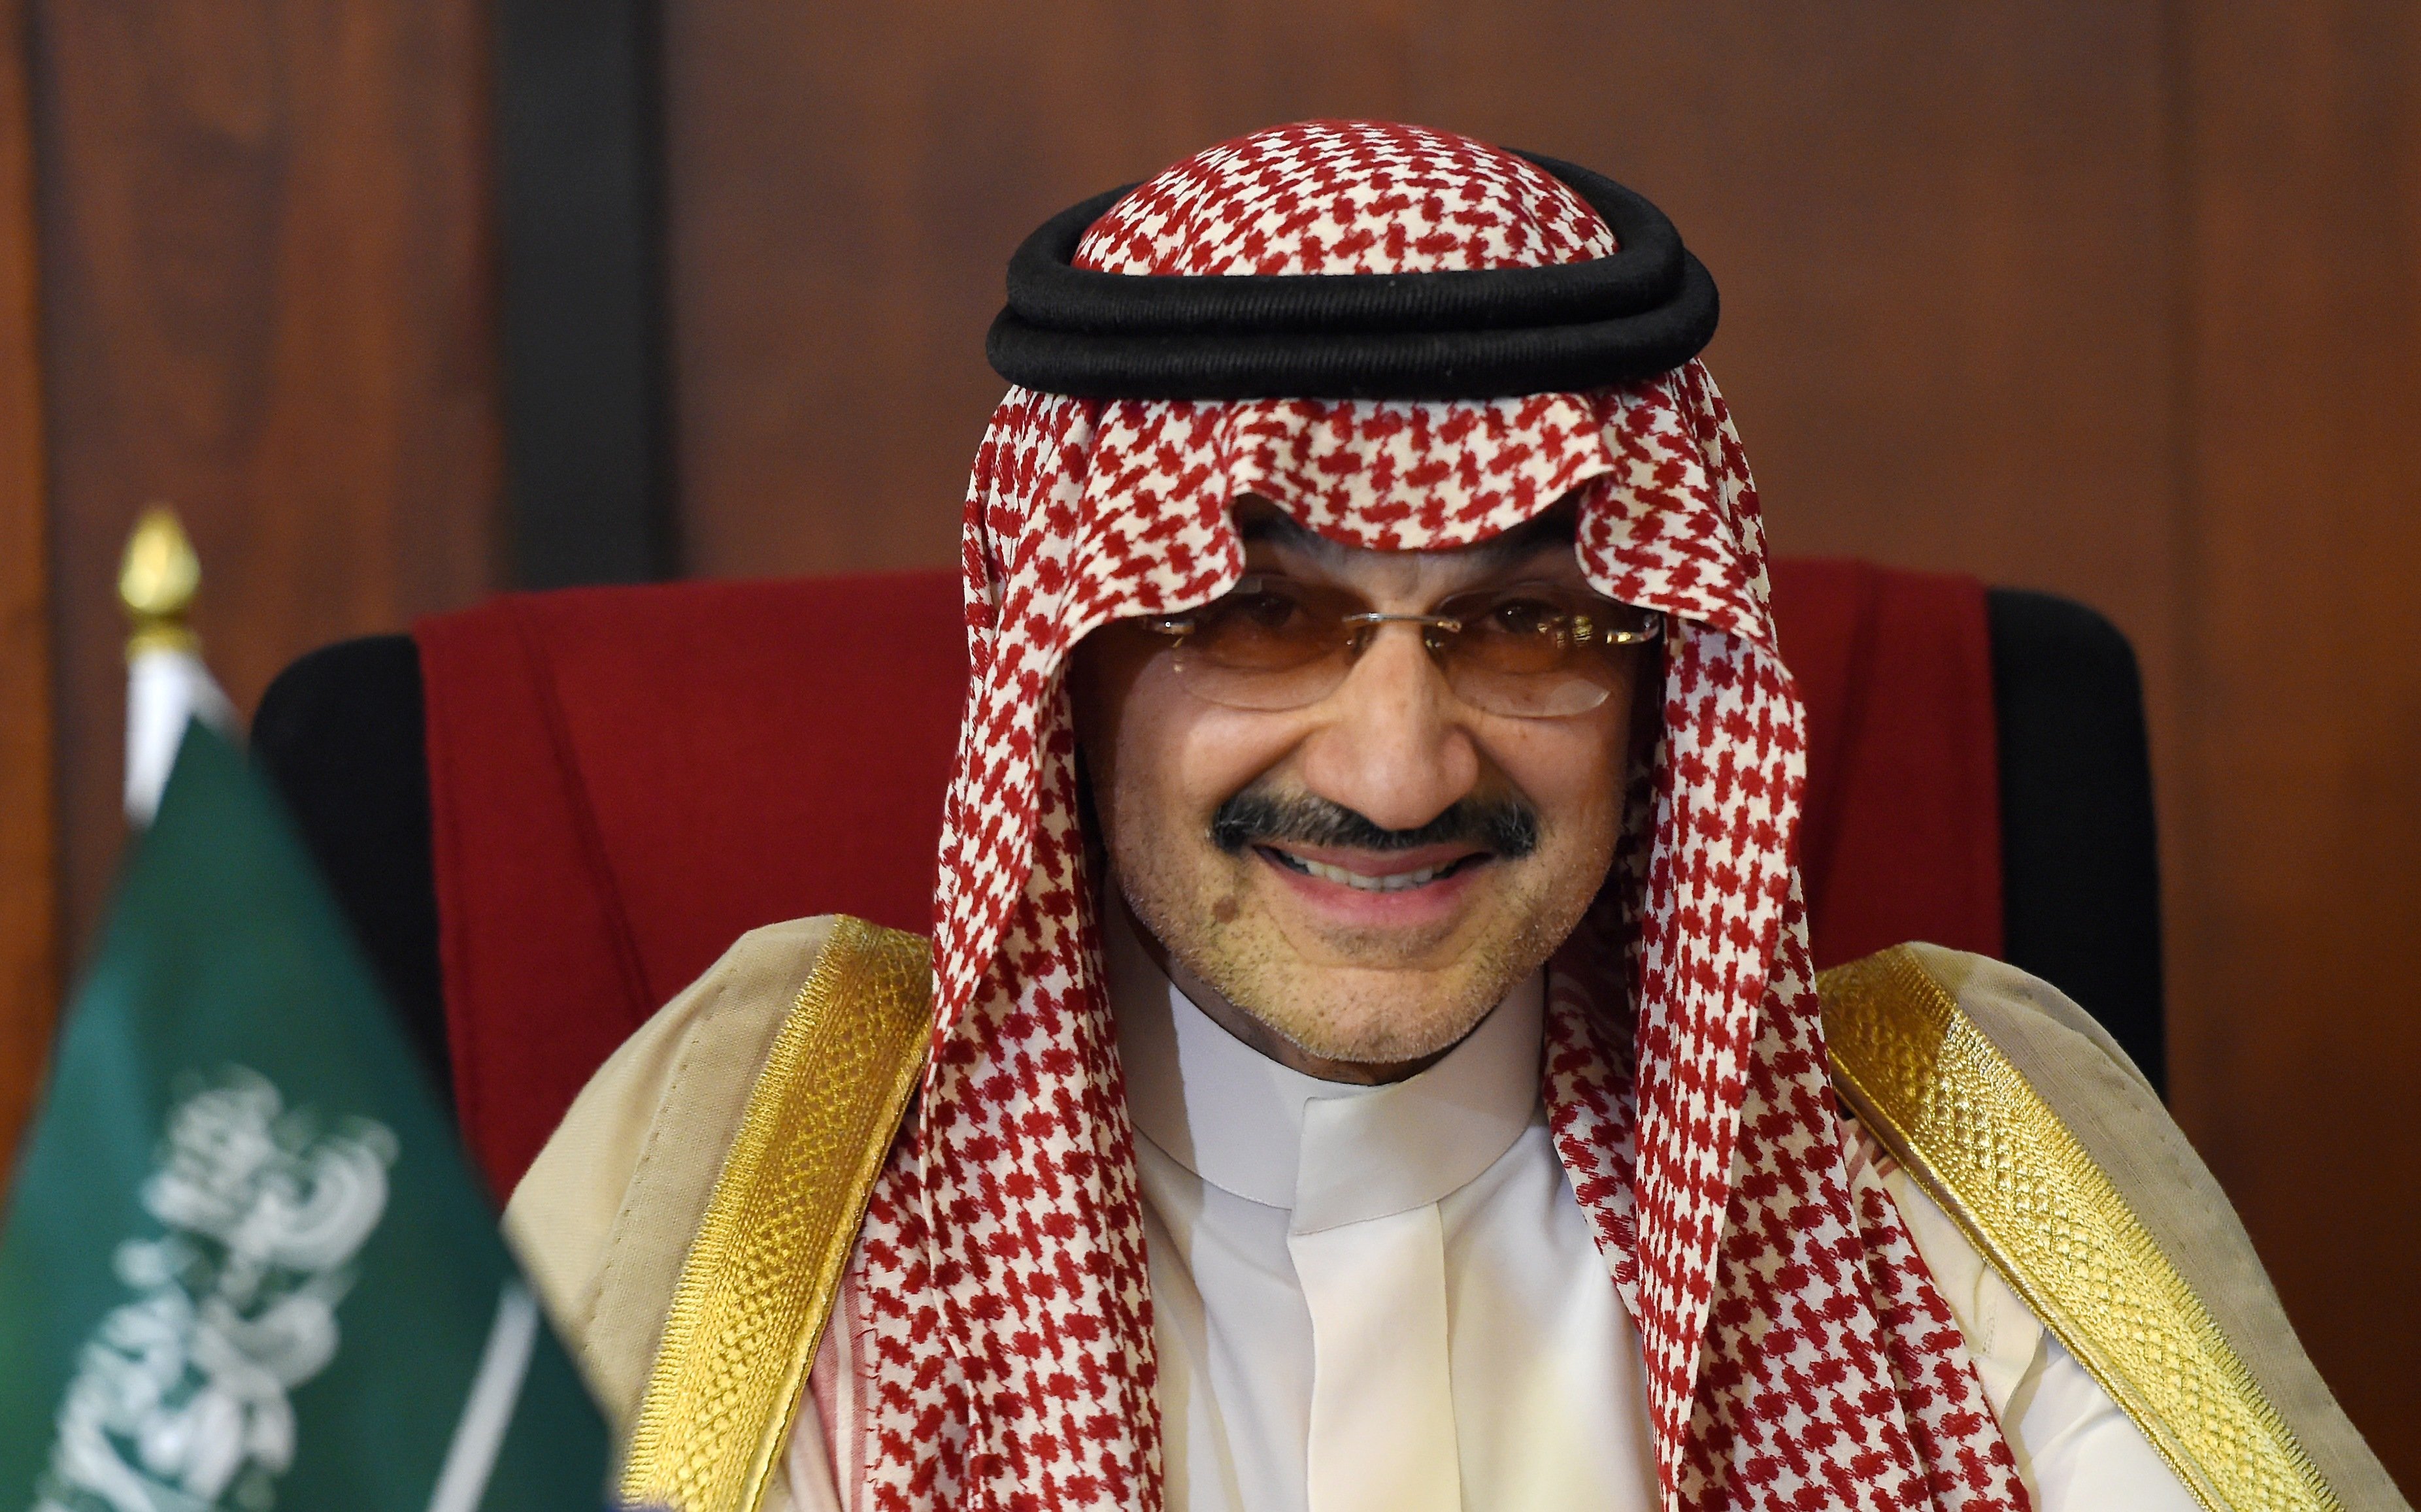 Saudi royal Getty Images/ISHARA S. KODIKARA